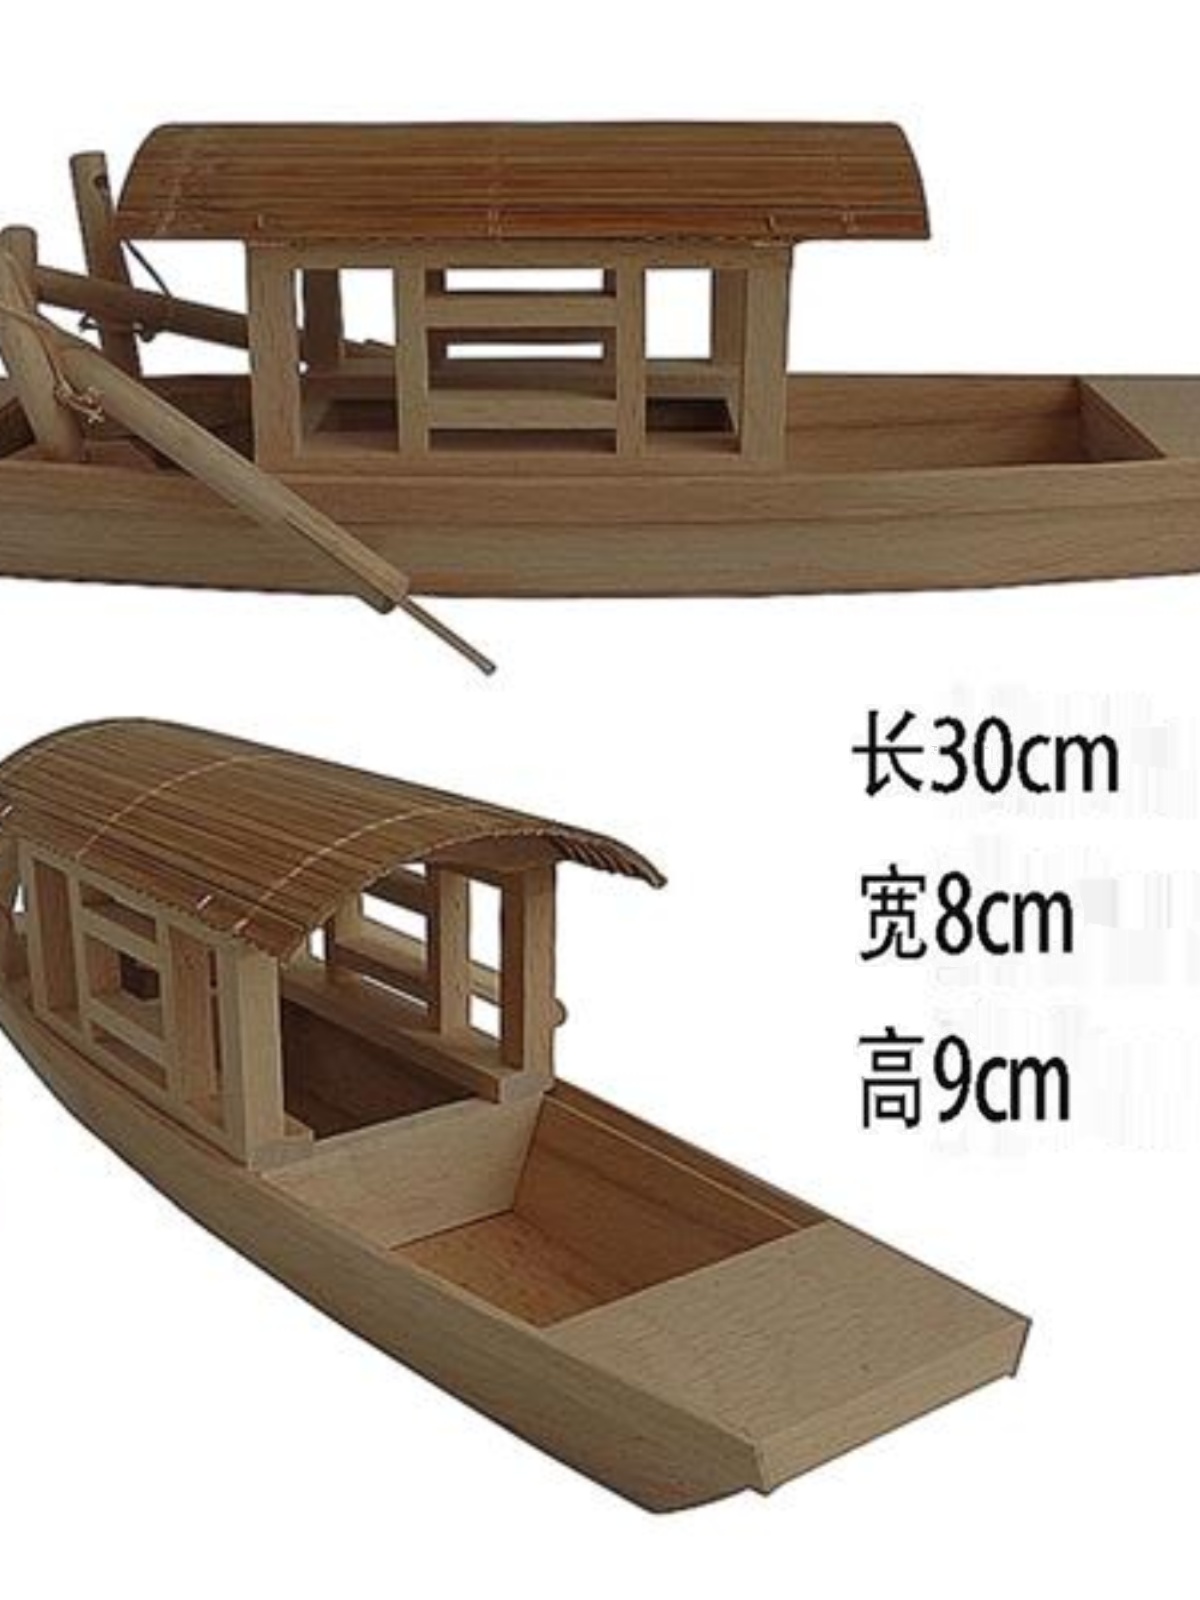 实木制船模渔船木船家庭装饰摆件木质小船工艺小模型模型包邮摆件